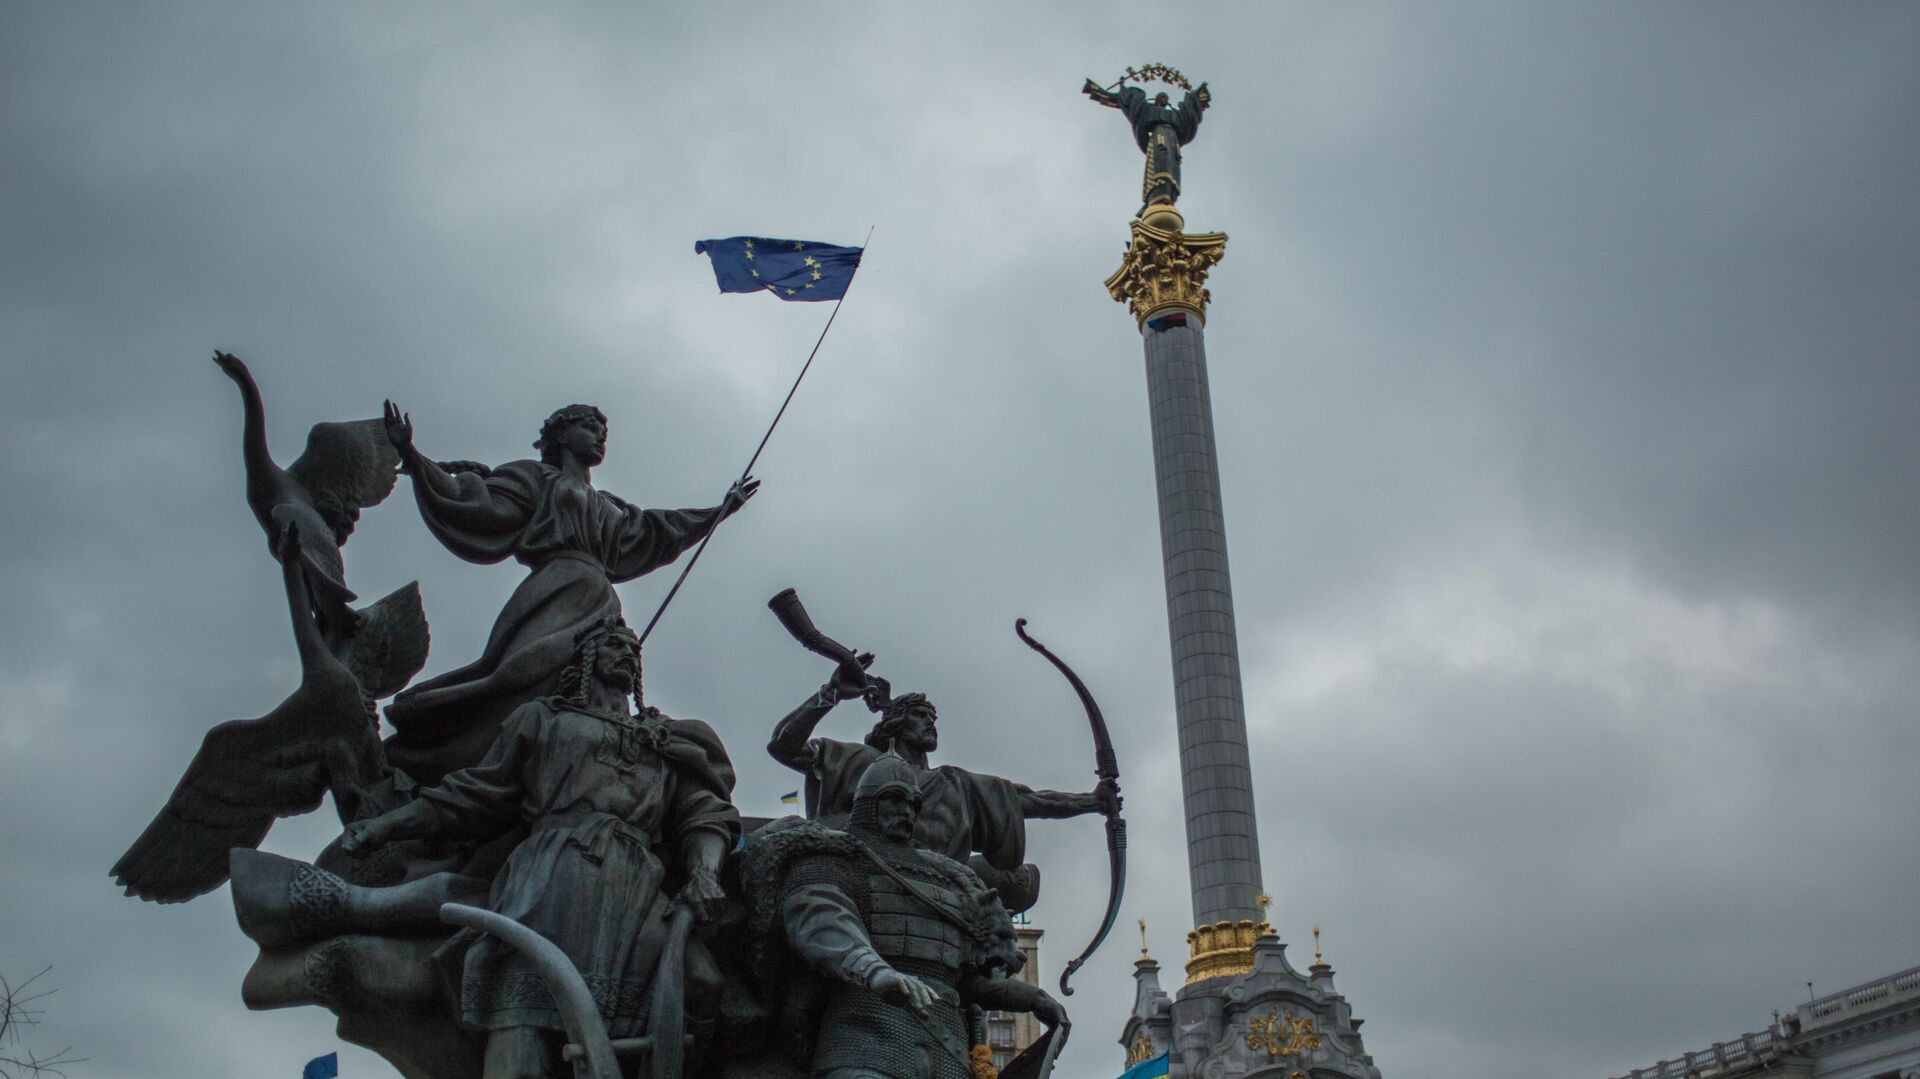 Акция в поддержку евроинтеграции Украины на площади Независимости в Киеве - Sputnik Lietuva, 1920, 13.09.2021